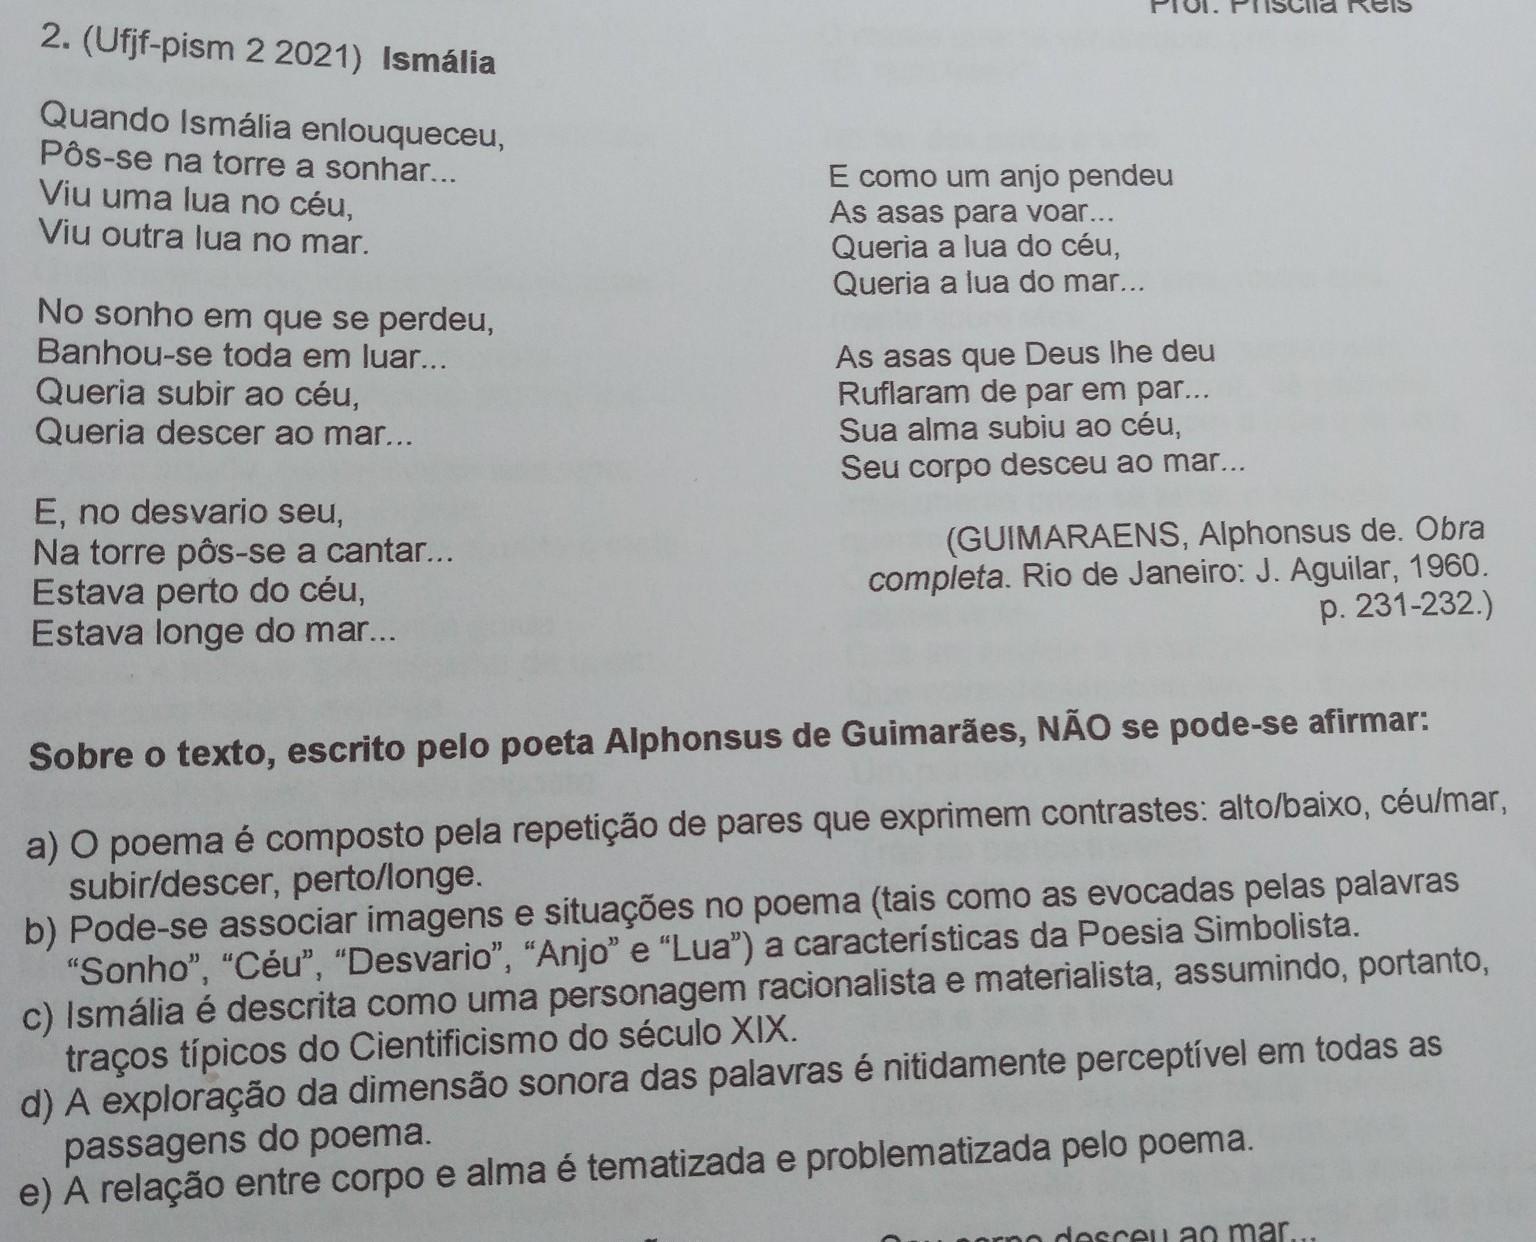 Sobre o texto, escrito pelo poeta Alphonsus de Guimarães, N